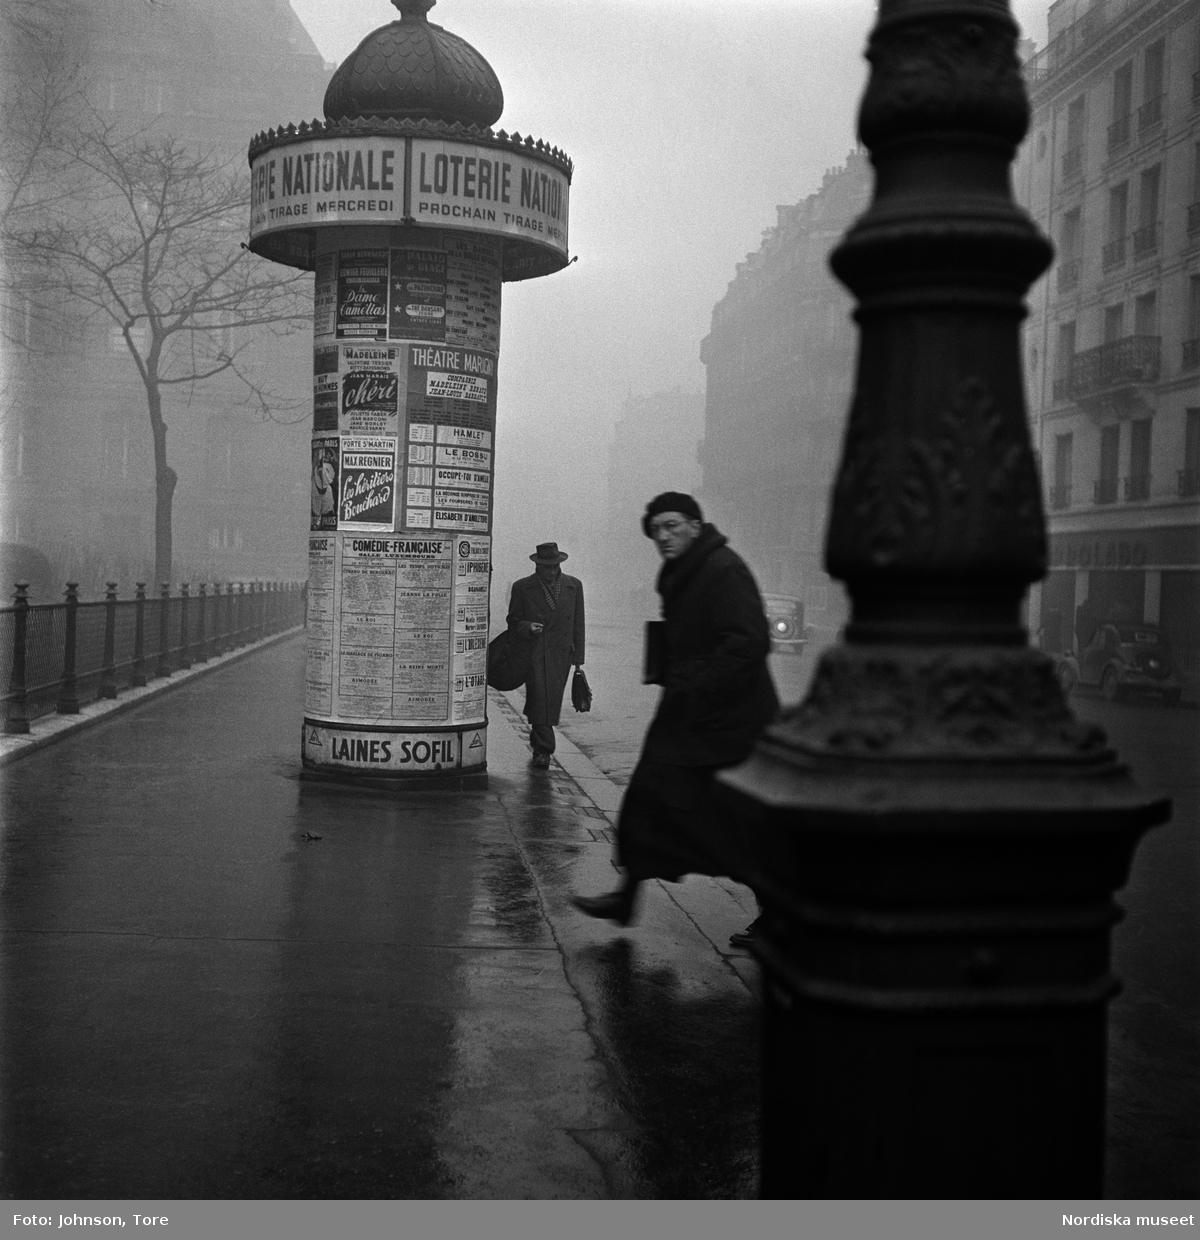 Fotgängare på en gata i Paris, annonspelare i bakgrunden.